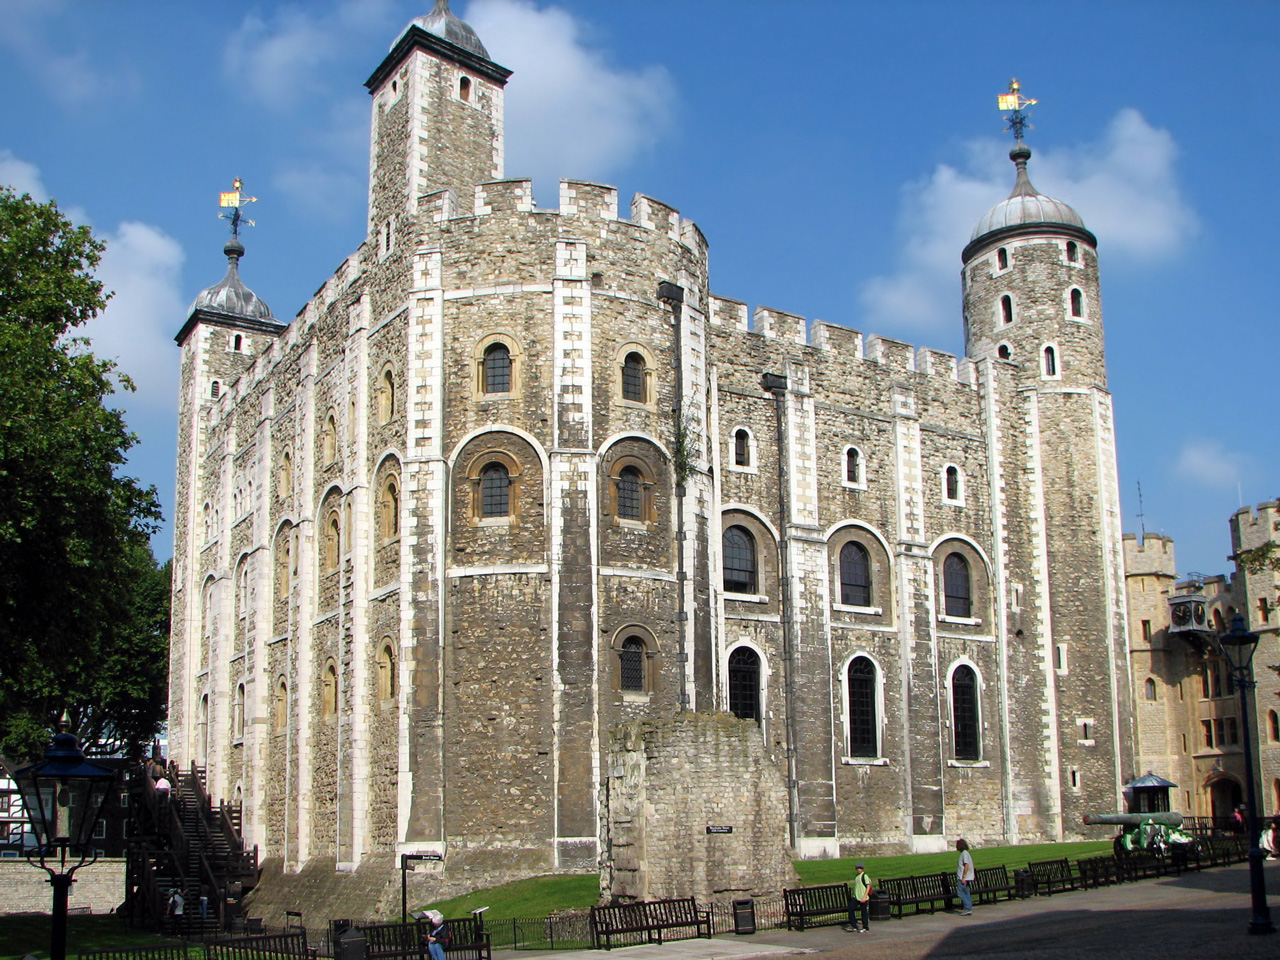 Conociendo 🌎 Torre de Londres - Conoce las atracciones turísticas más